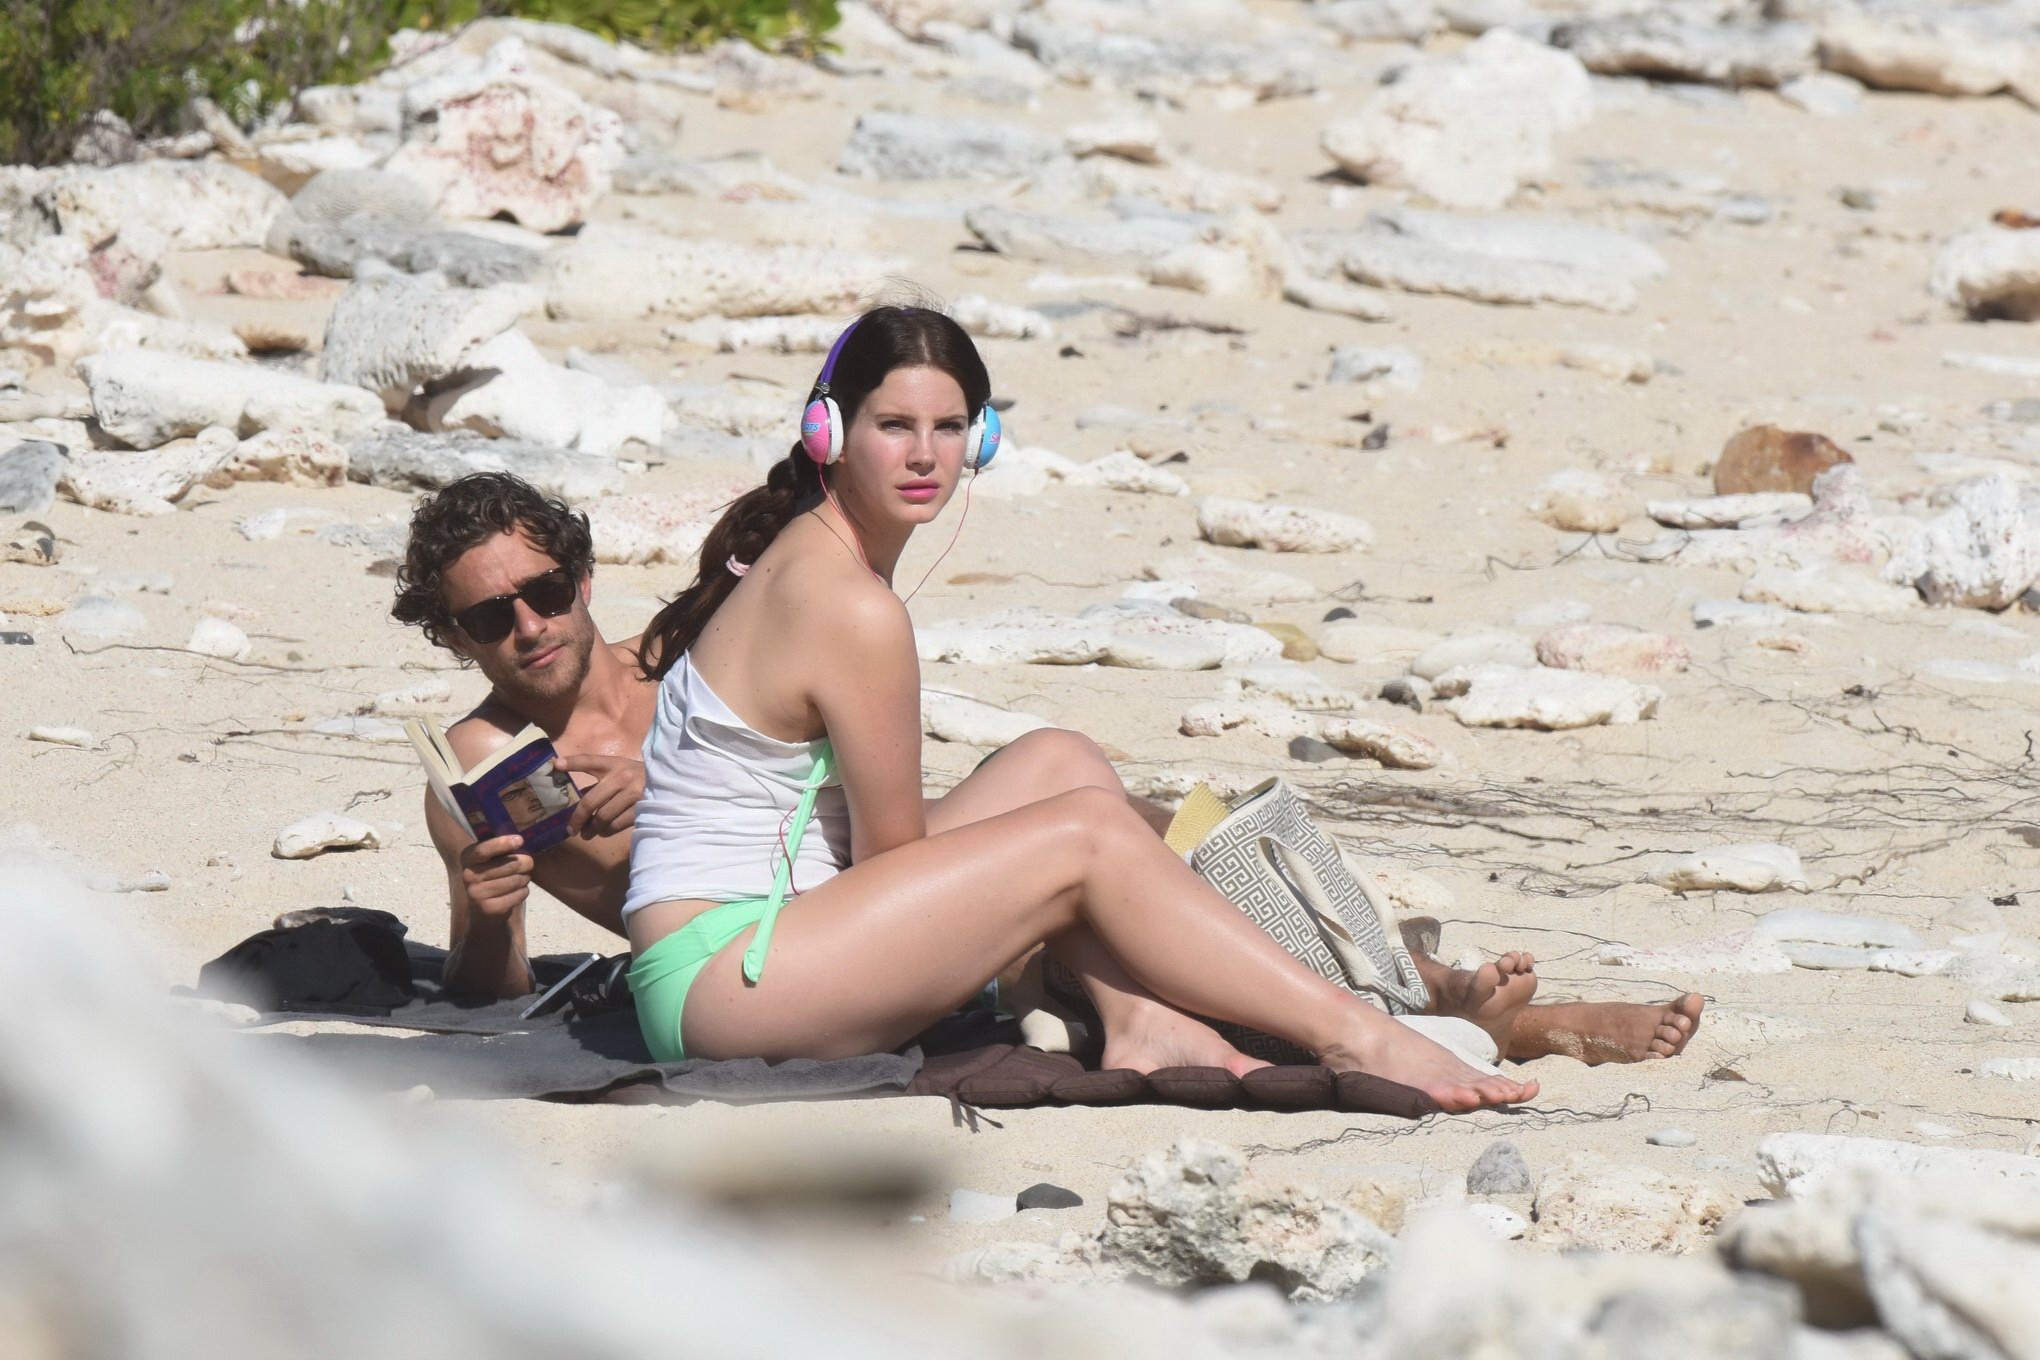 Lana Del Rey wearing green bikini at the beach in StBarts #75176871